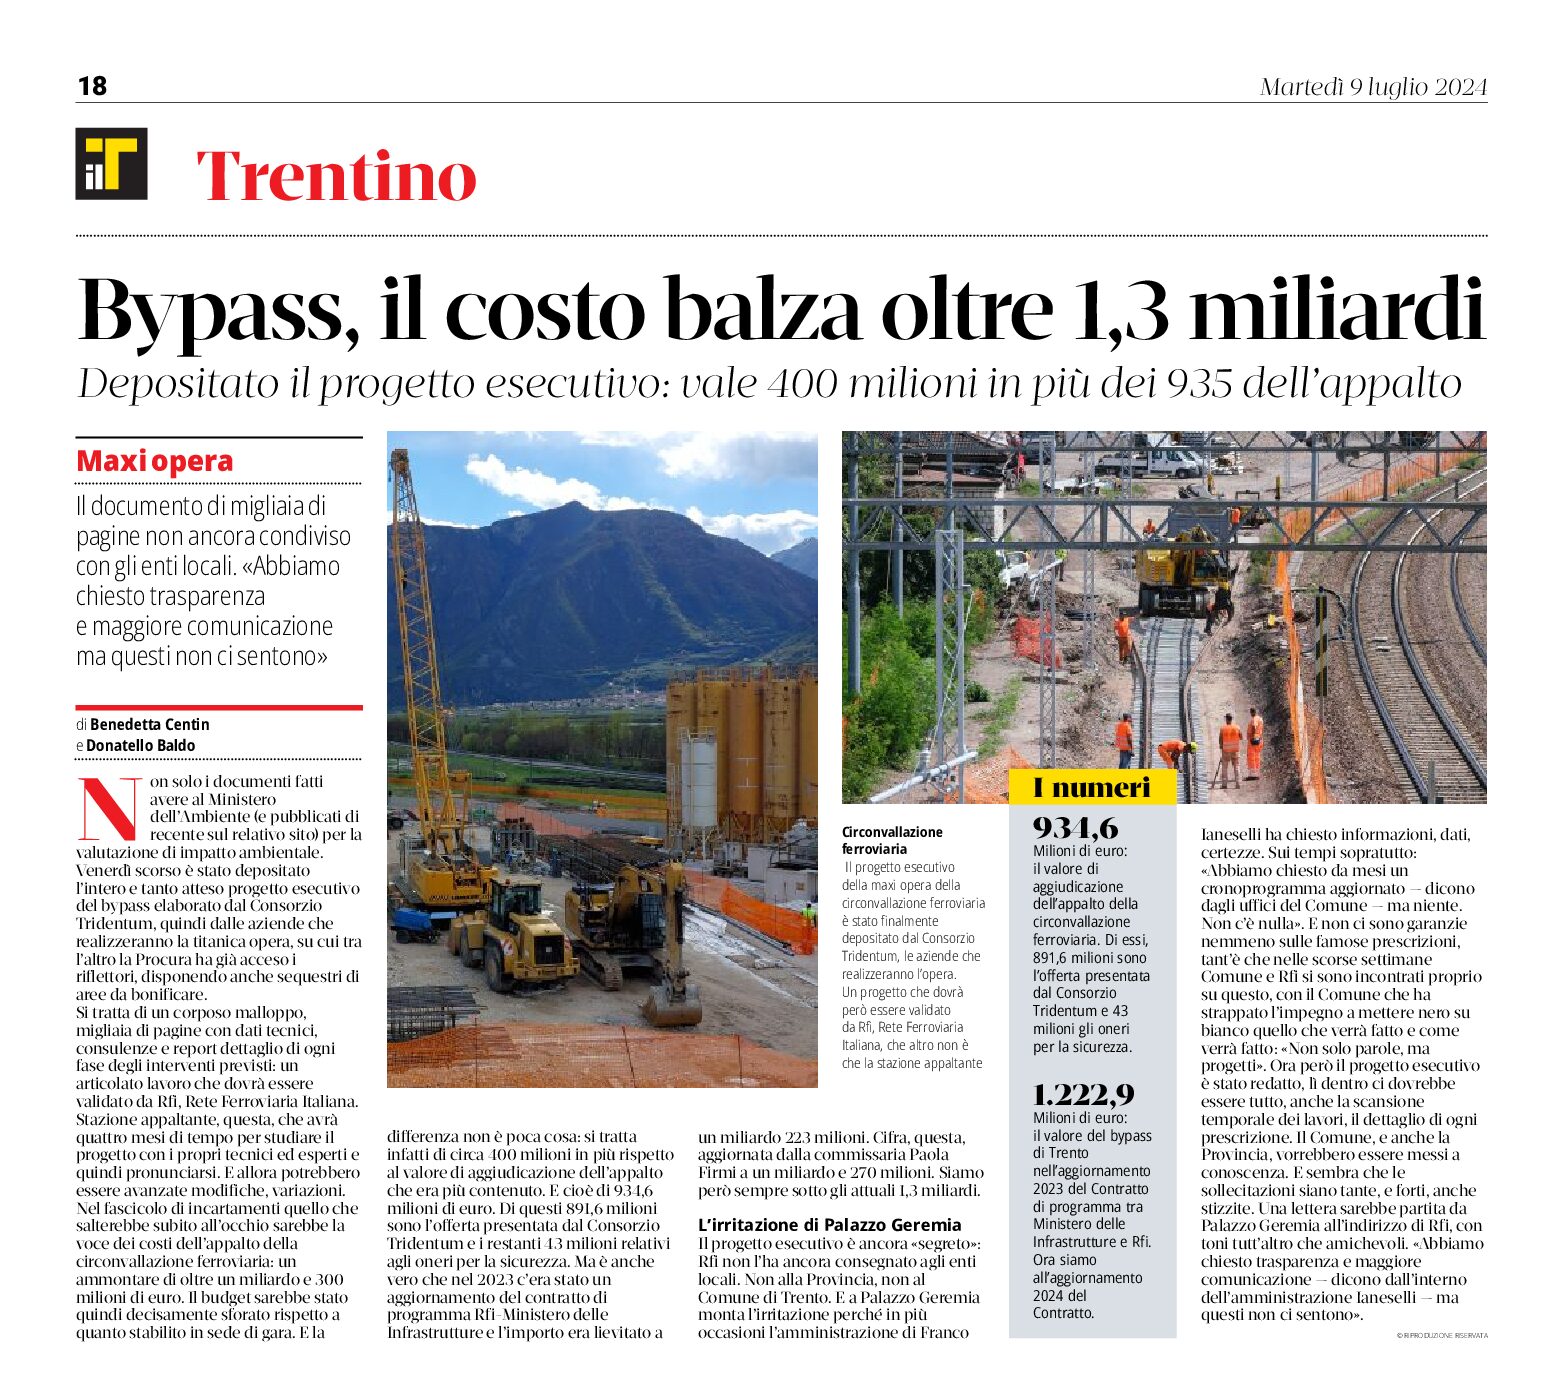 Trento, bypass: il costo balza oltre 1,3 miliardi